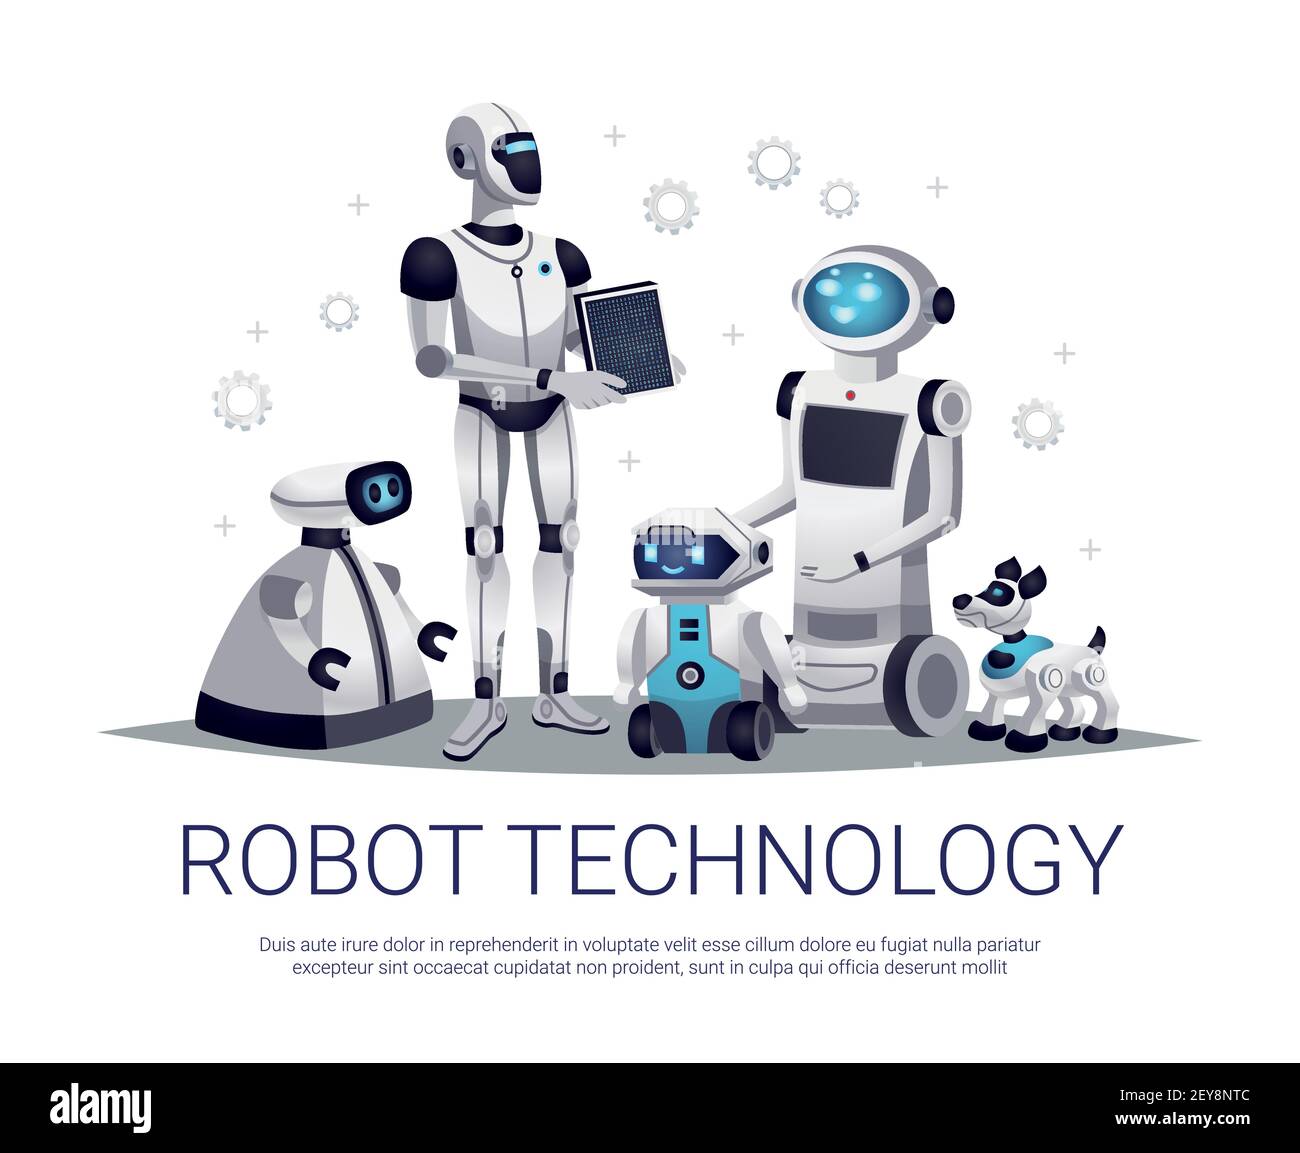 Robot di nuova generazione tecnologia futura composizione piatta con umanoide automatizzato illustrazione vettoriale di aiutanti e animali domestici telecomandati Illustrazione Vettoriale